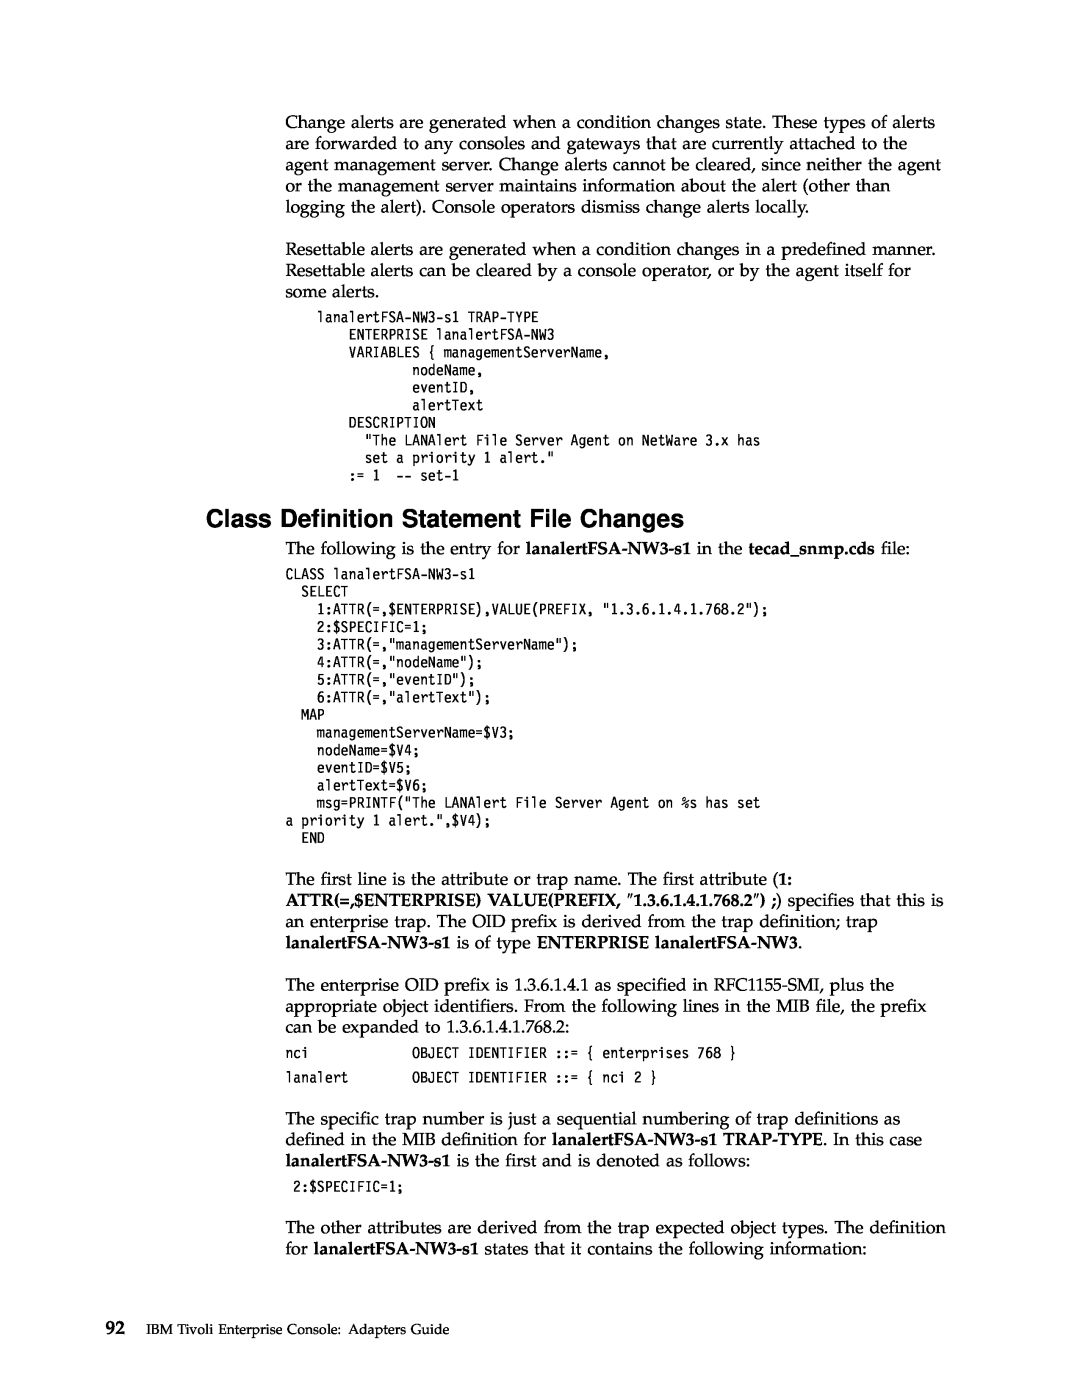 IBM Enterprise Console manual Class Definition Statement File Changes 